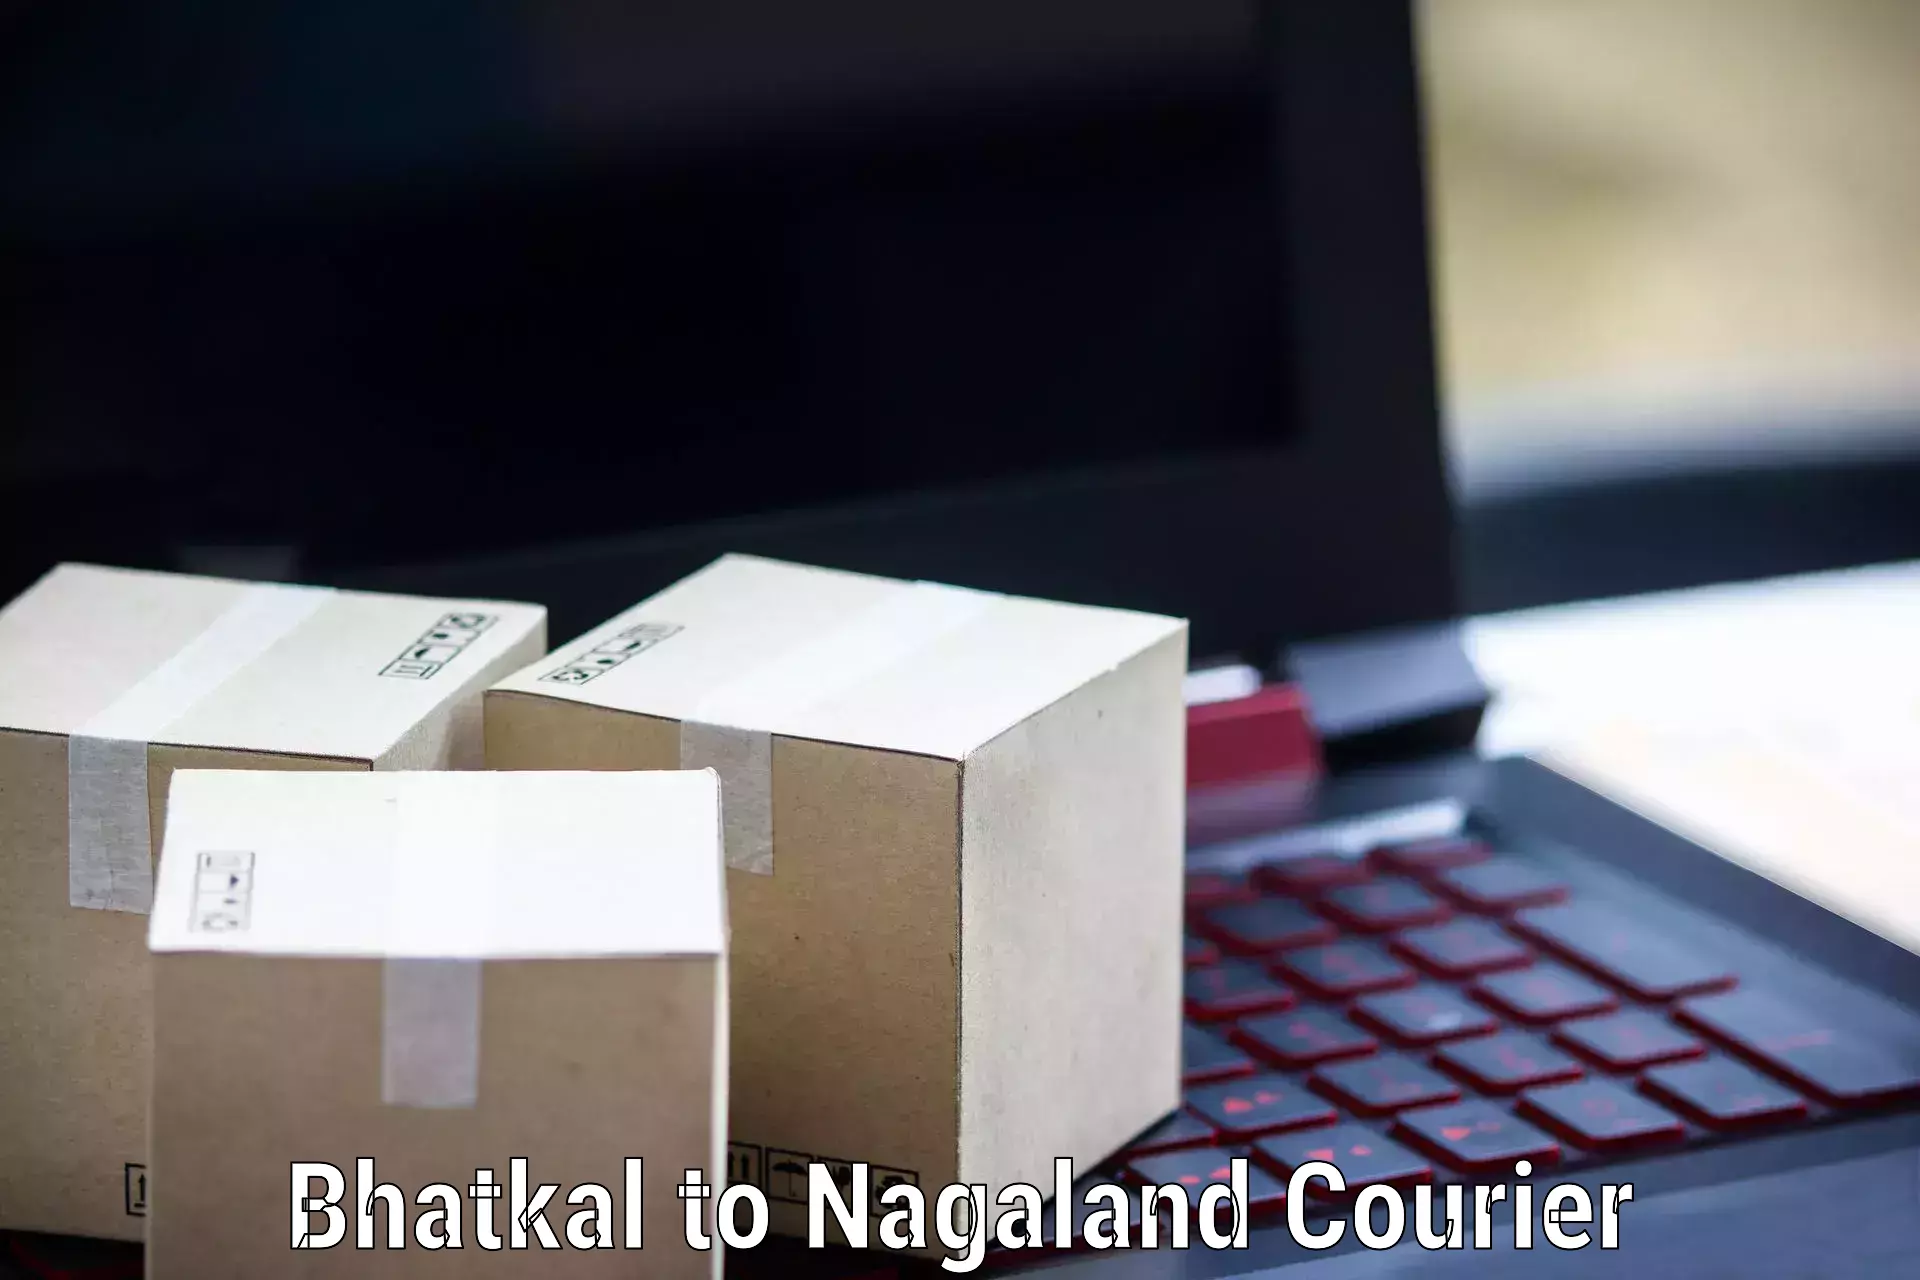 Door-to-door freight service Bhatkal to NIT Nagaland